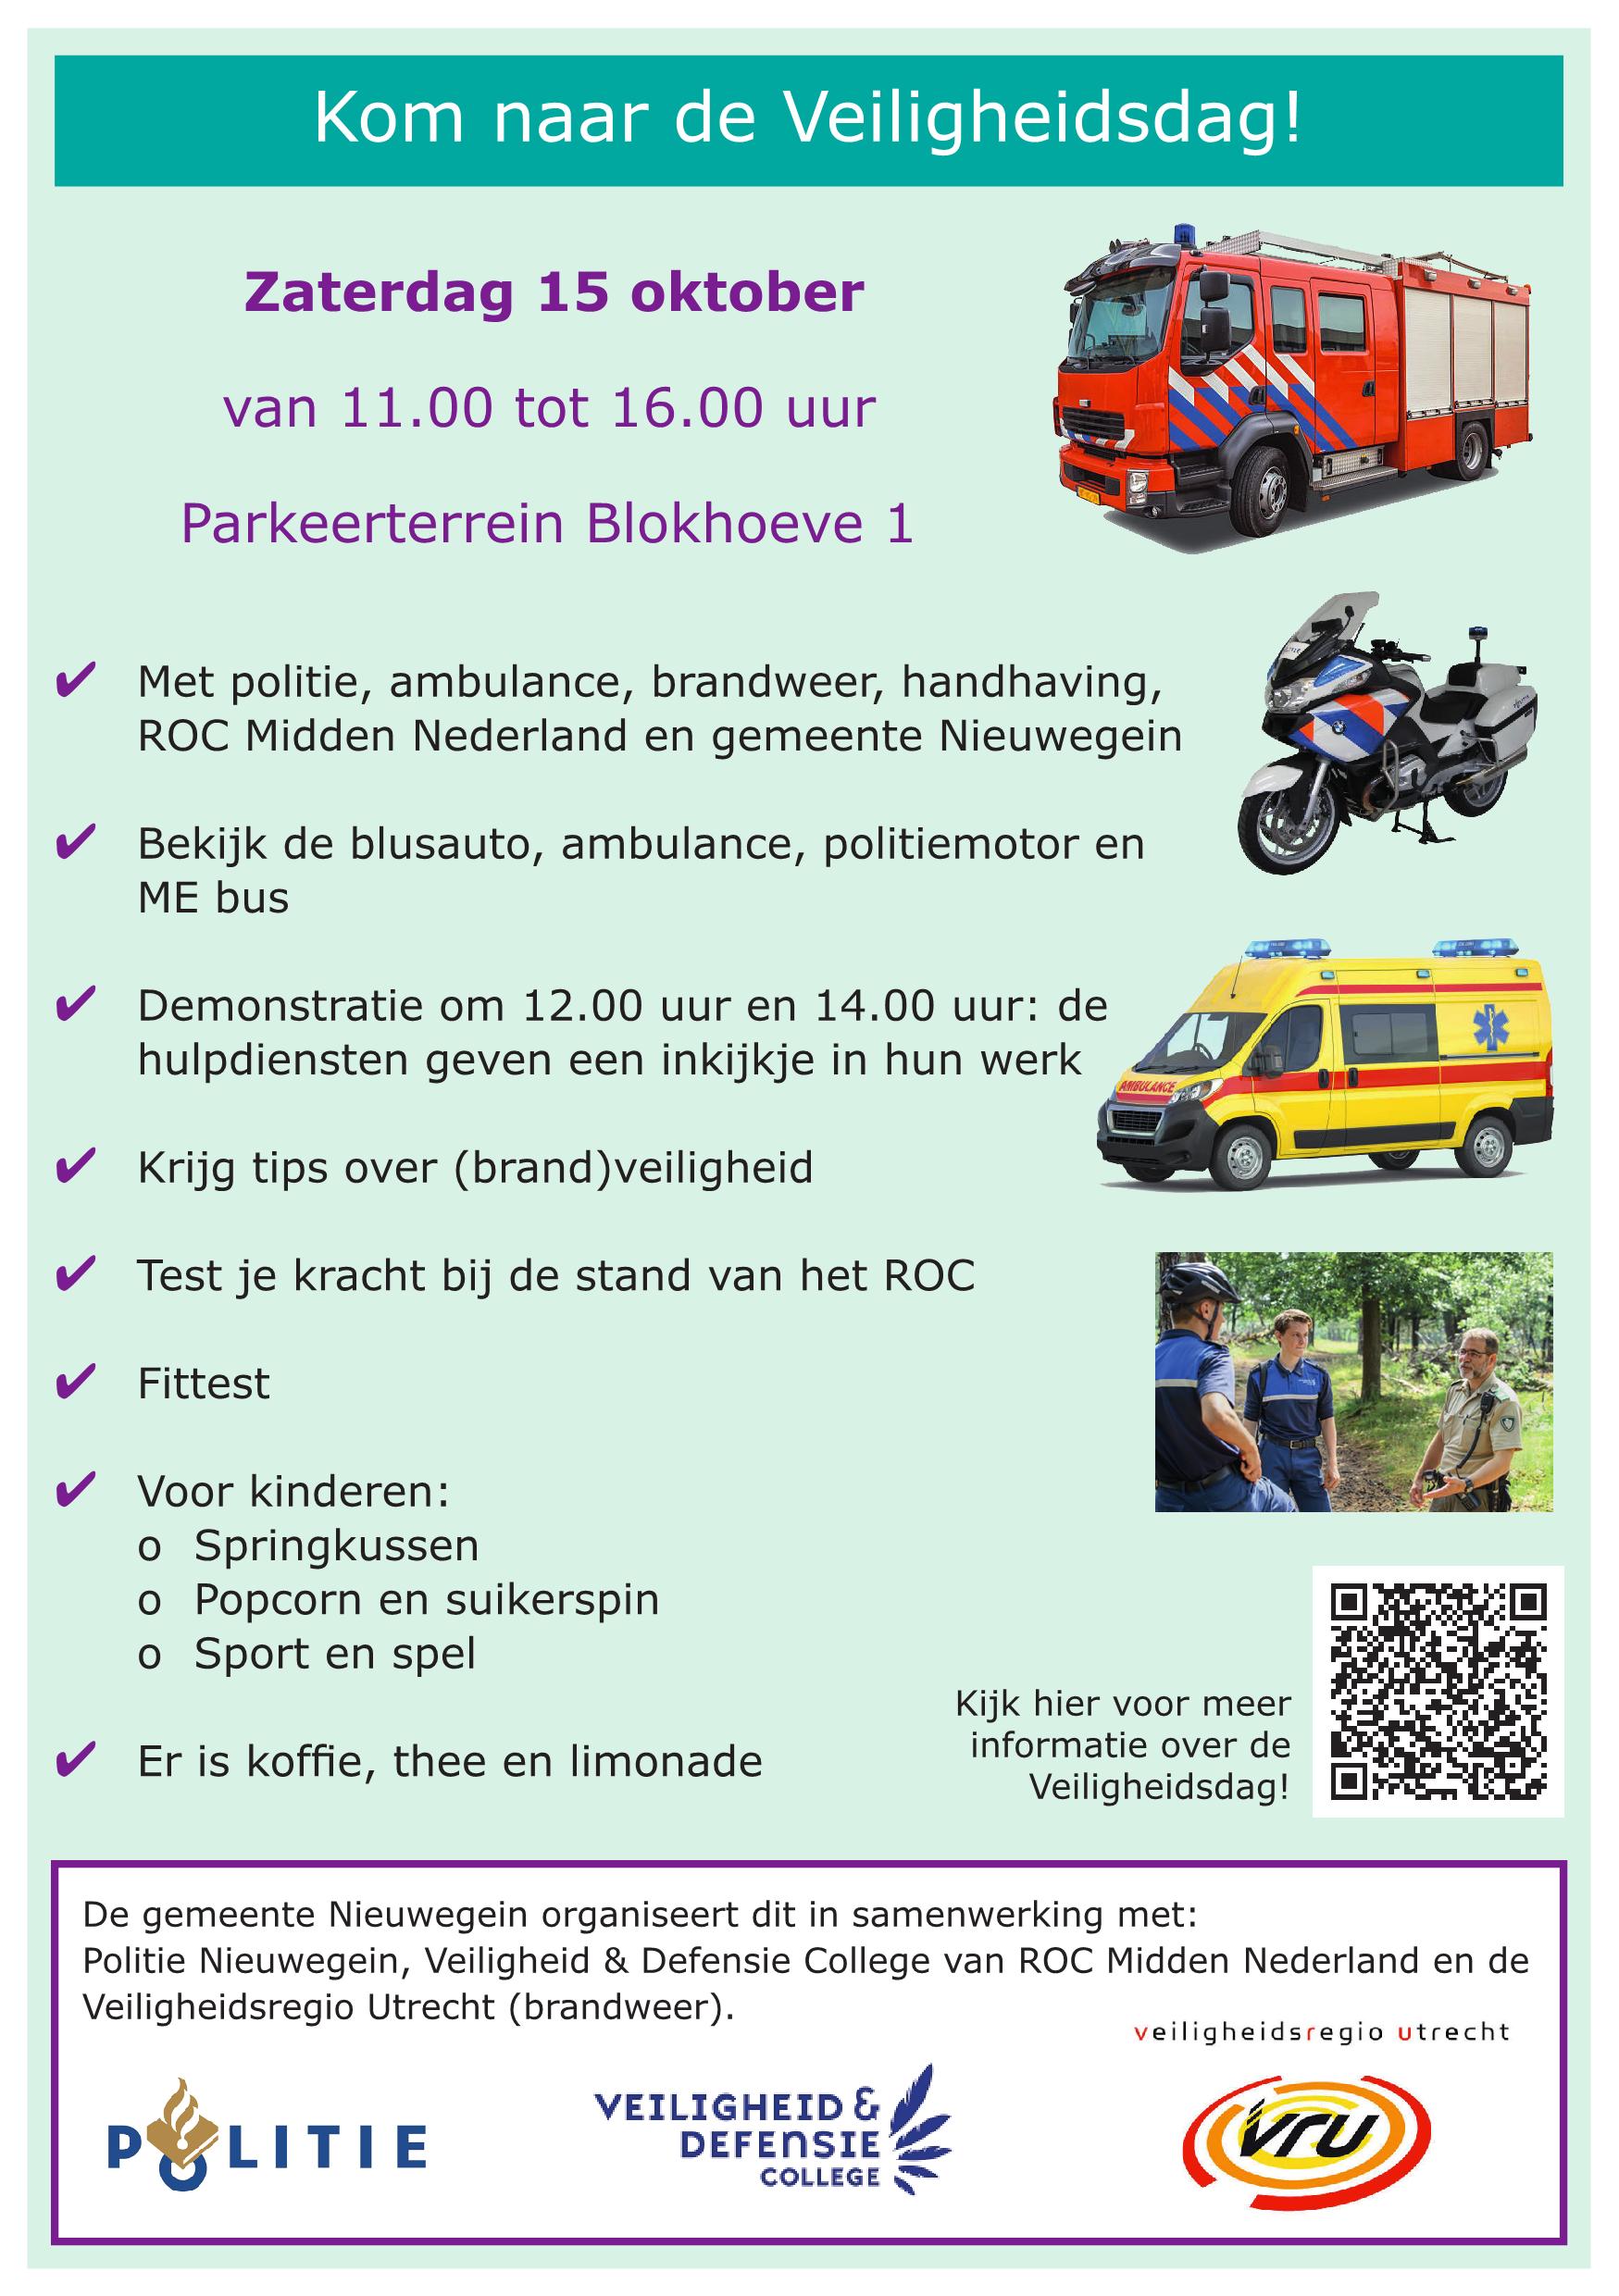 https://www.nieuwegeinsewijken.nl/batau-zuid/upload/afbeeldingen/flyer-veiligheidsdag2.jpg